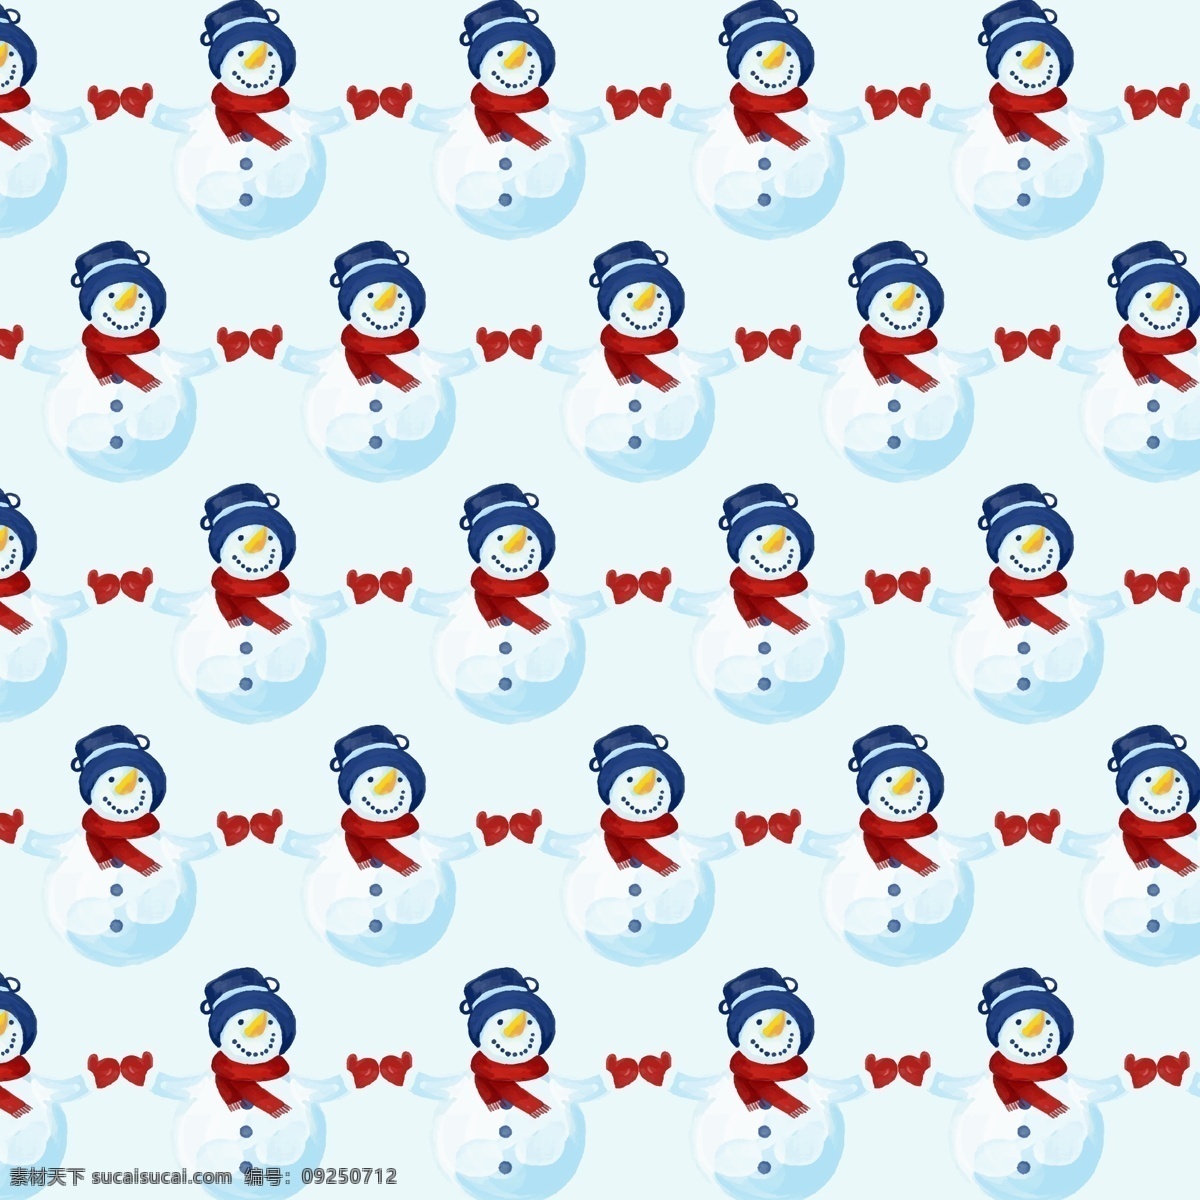 雪人无缝图案 雪人背景素材 广告设计模板 ai素材 雪人素材 礼品 外包装 图案 雪人 冬天 雪娃娃素材 蓝色帽子 红围巾 冬季素材